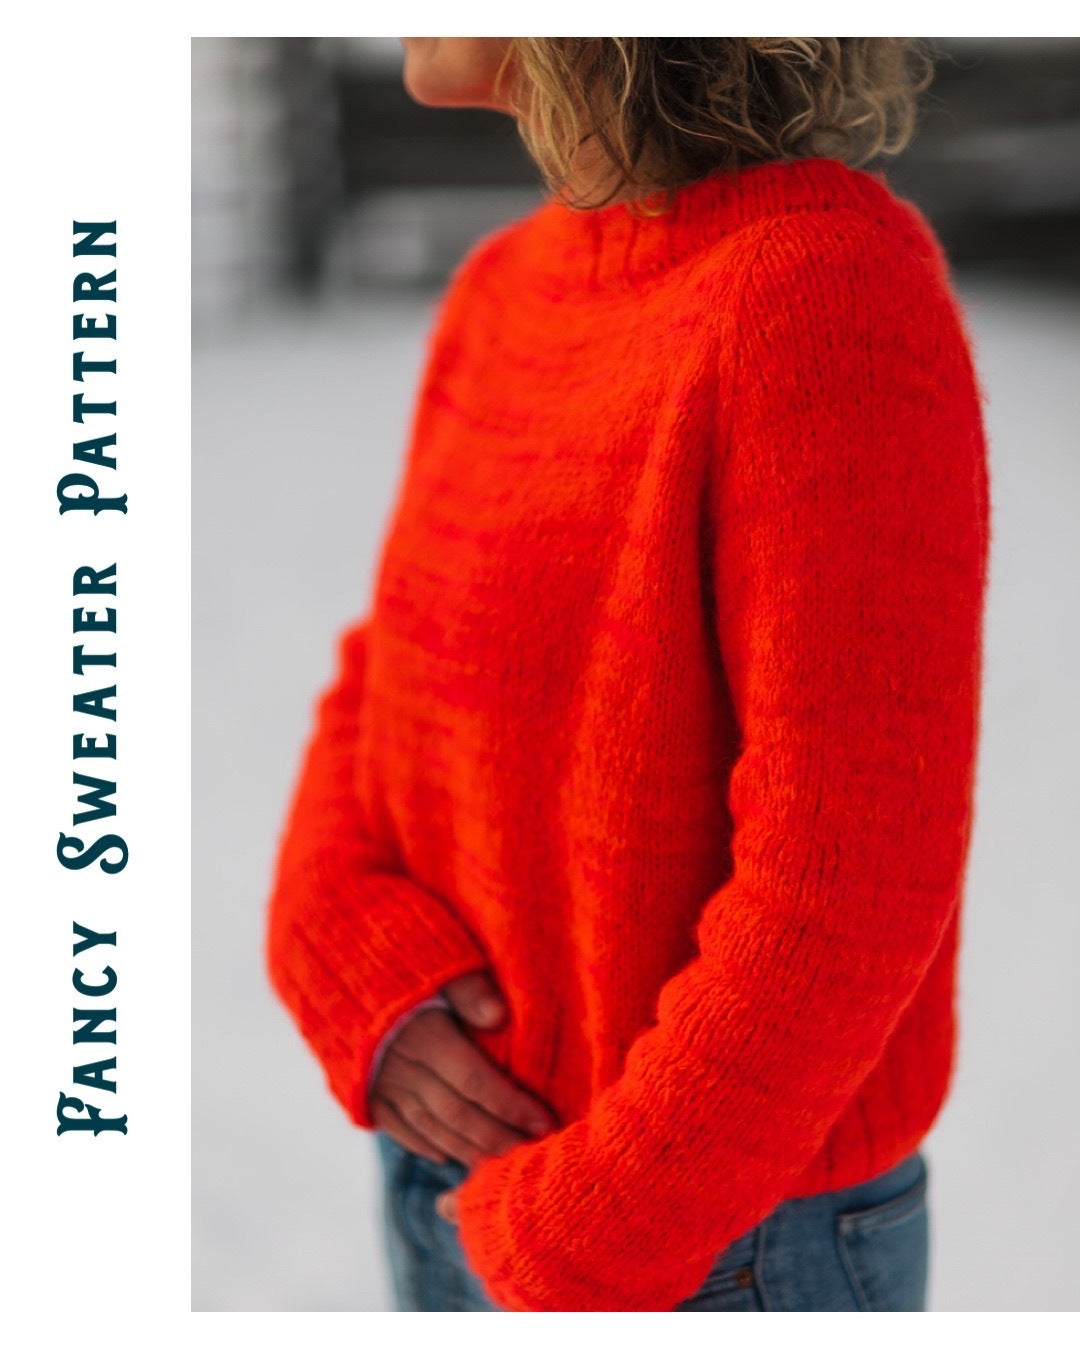 Fancy Sweater Pattern – The Lamb & Kid